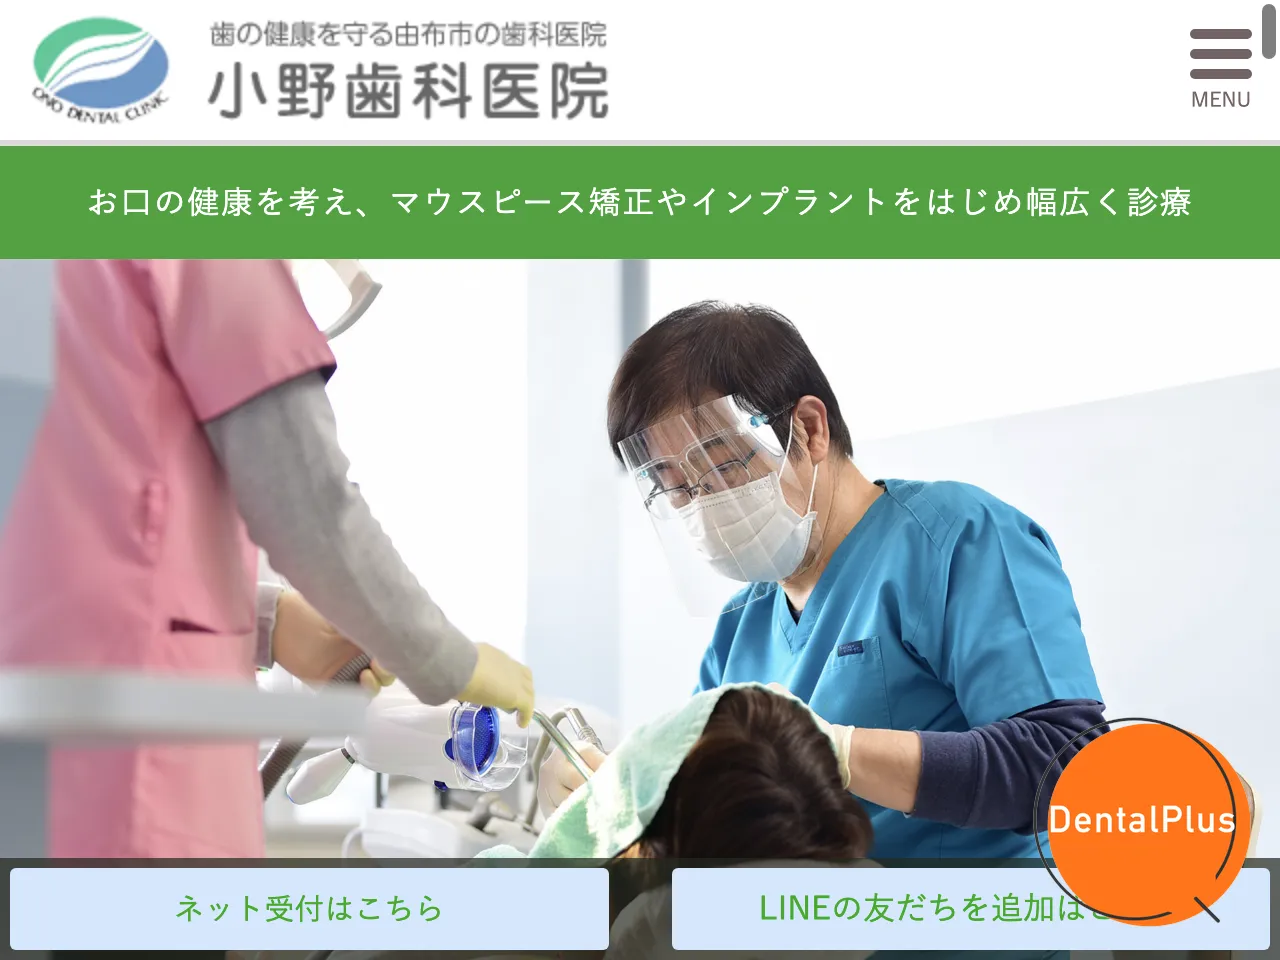 小野歯科医院のウェブサイト